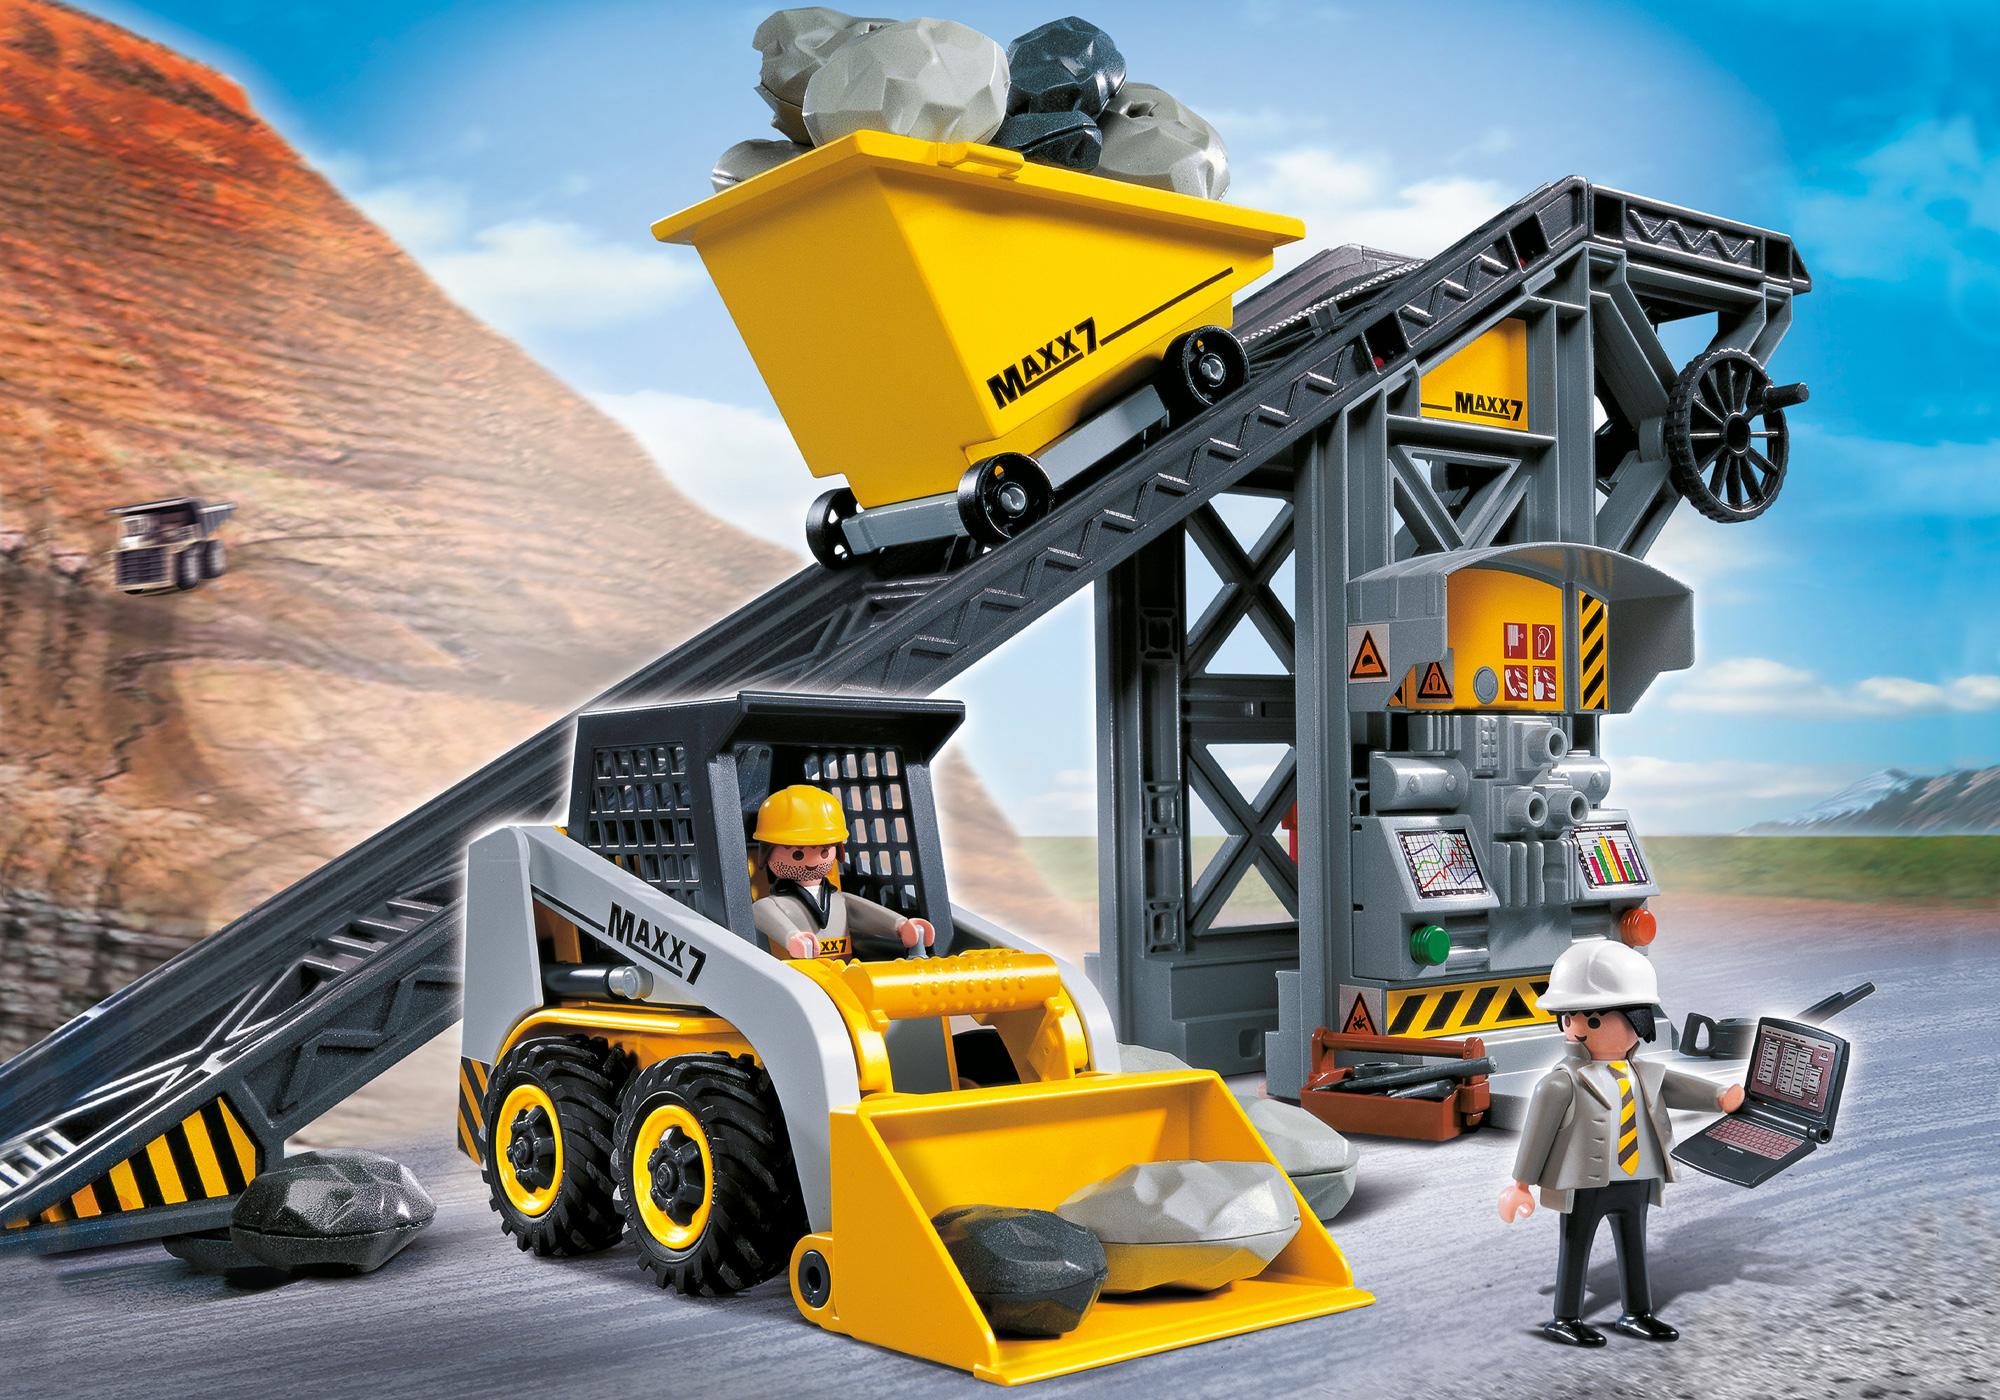 Conveyor with Mini Excavator - 4041 | PLAYMOBIL®